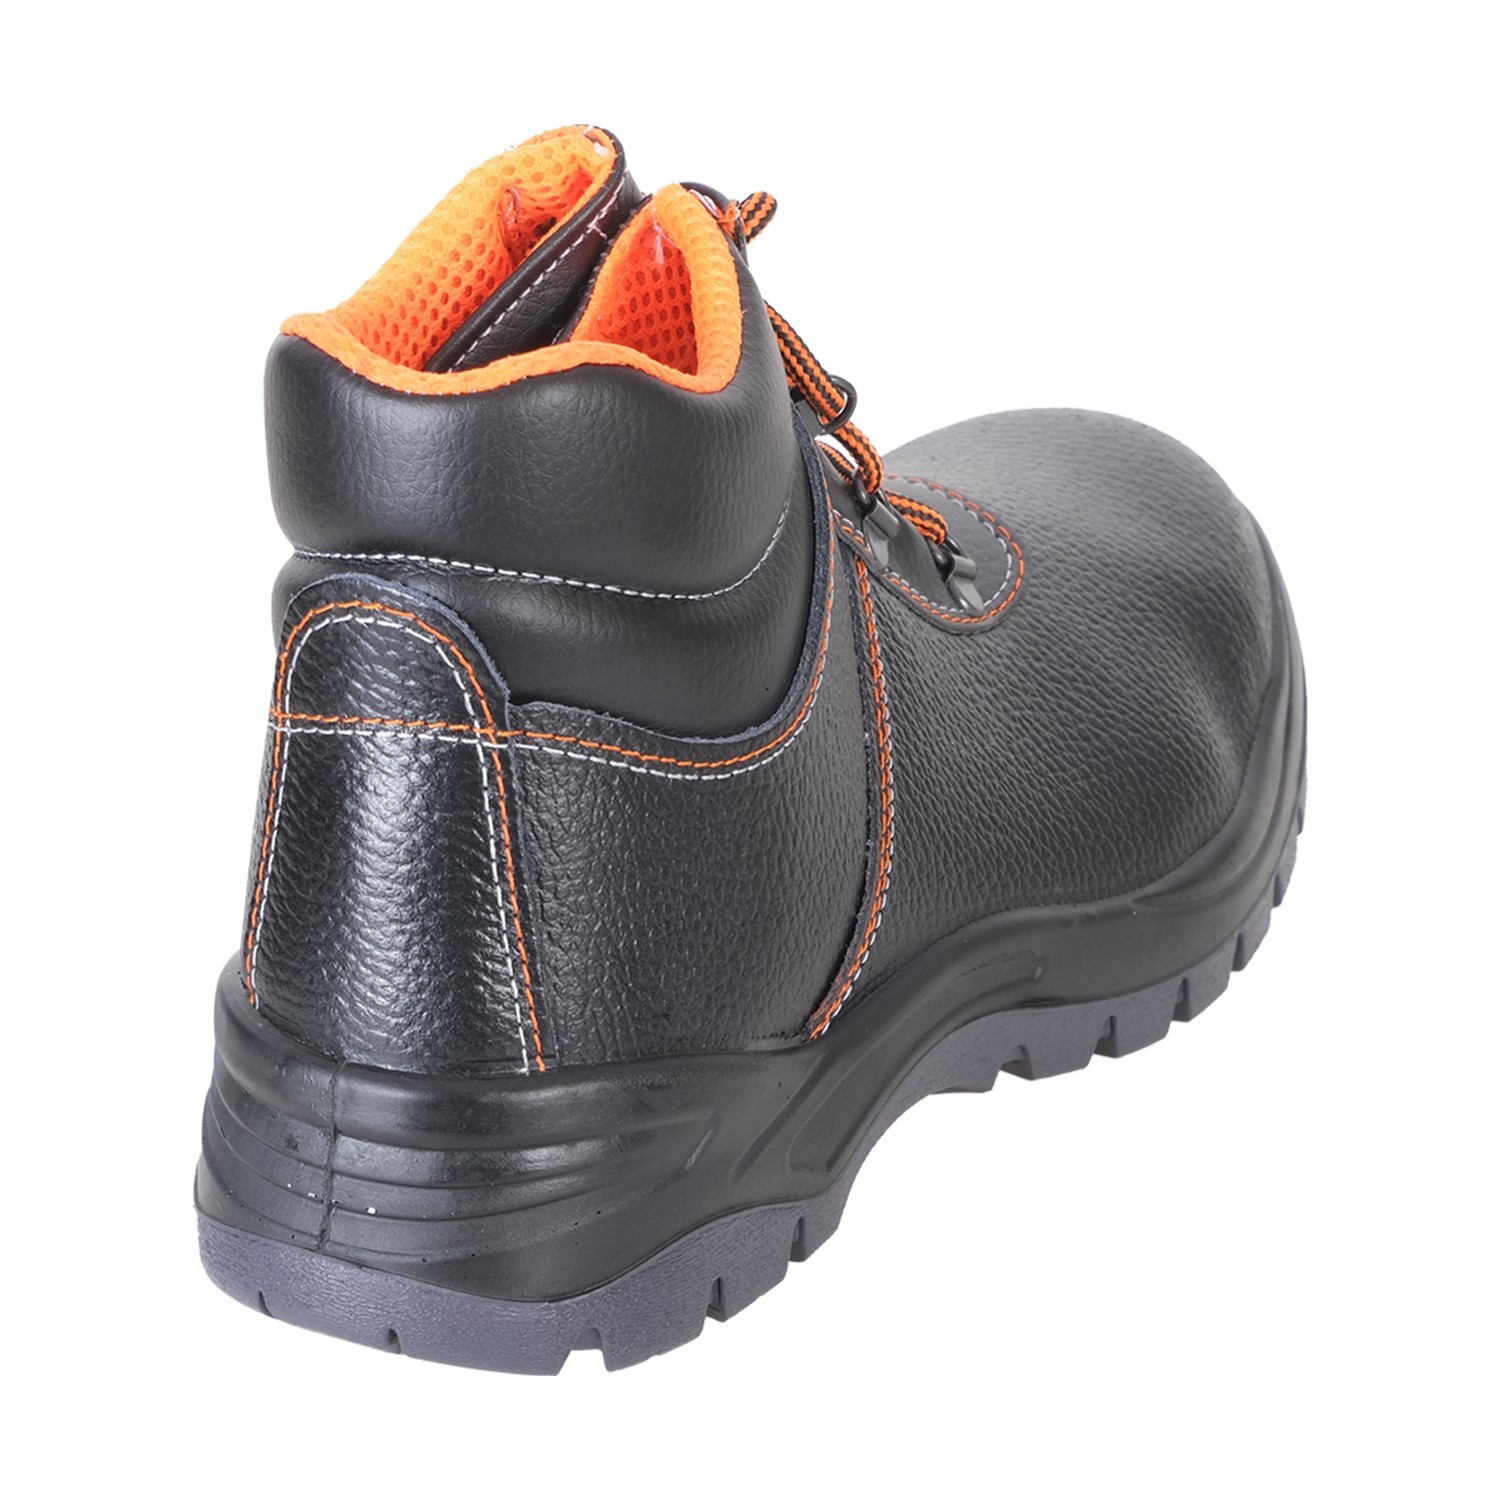 Кожаные защитные ботинки для работы  Mekap 023 R Leather S2 